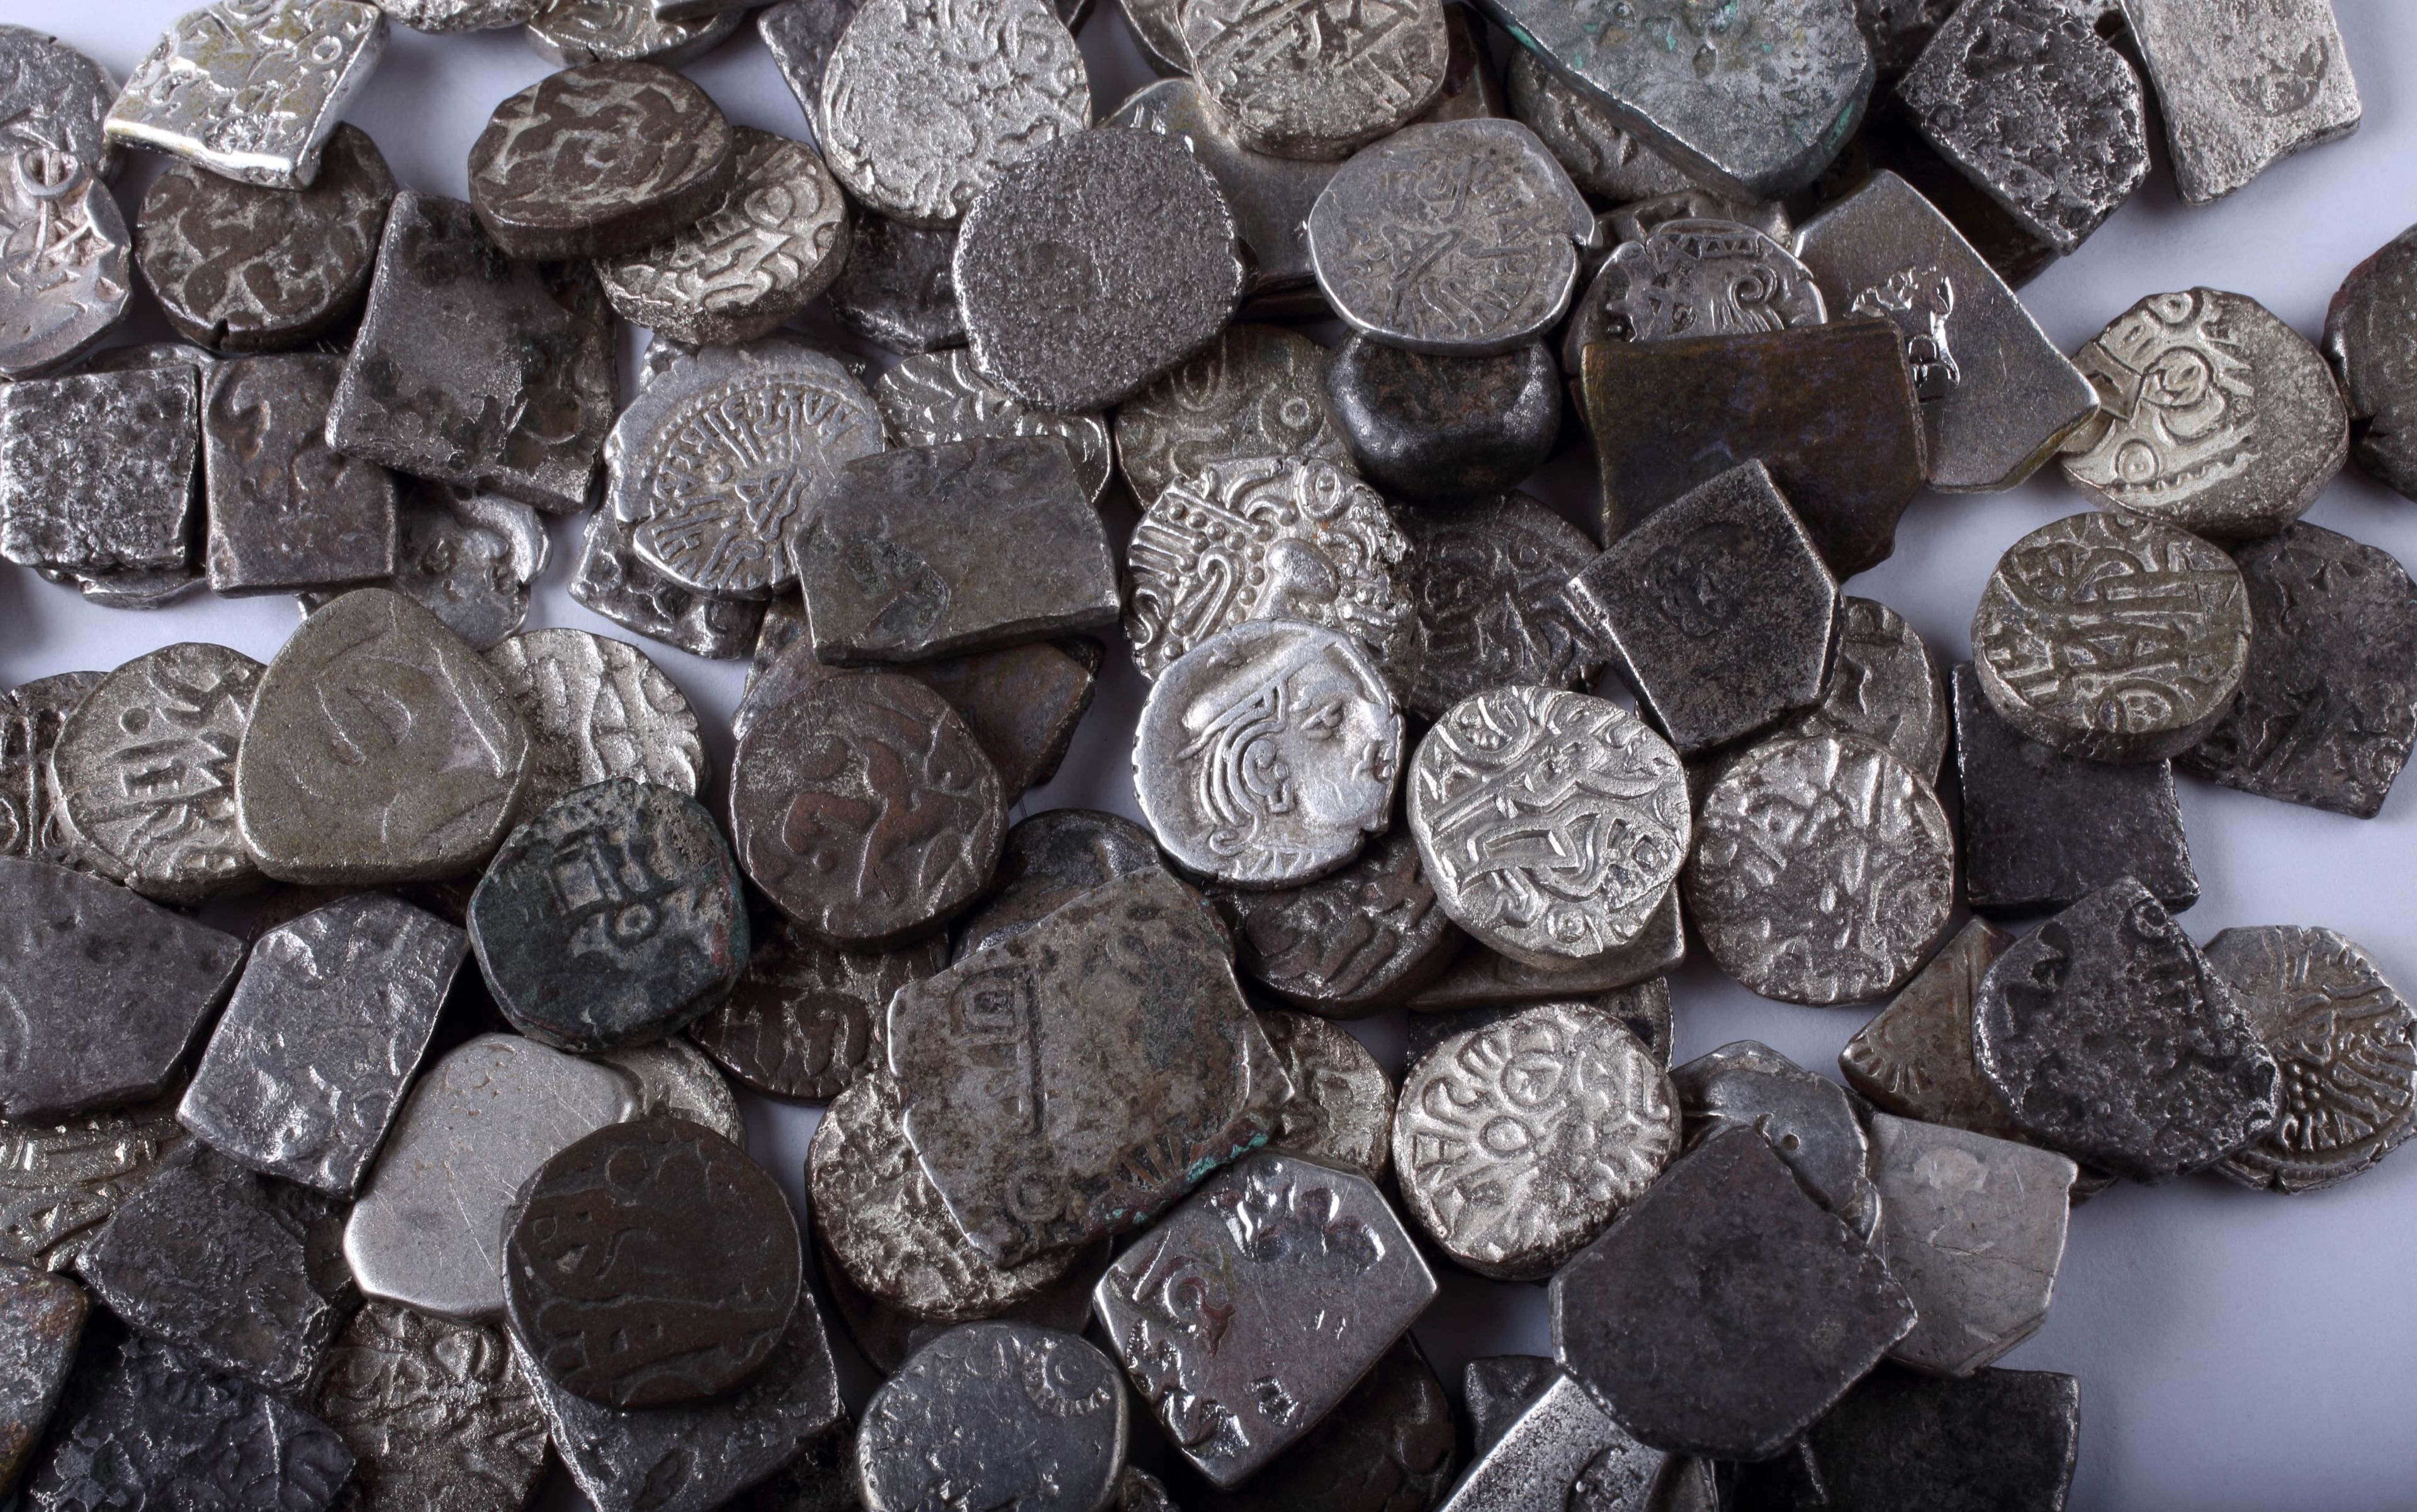 Monedas antiguas aparecidas en India en el año 600 a.C.